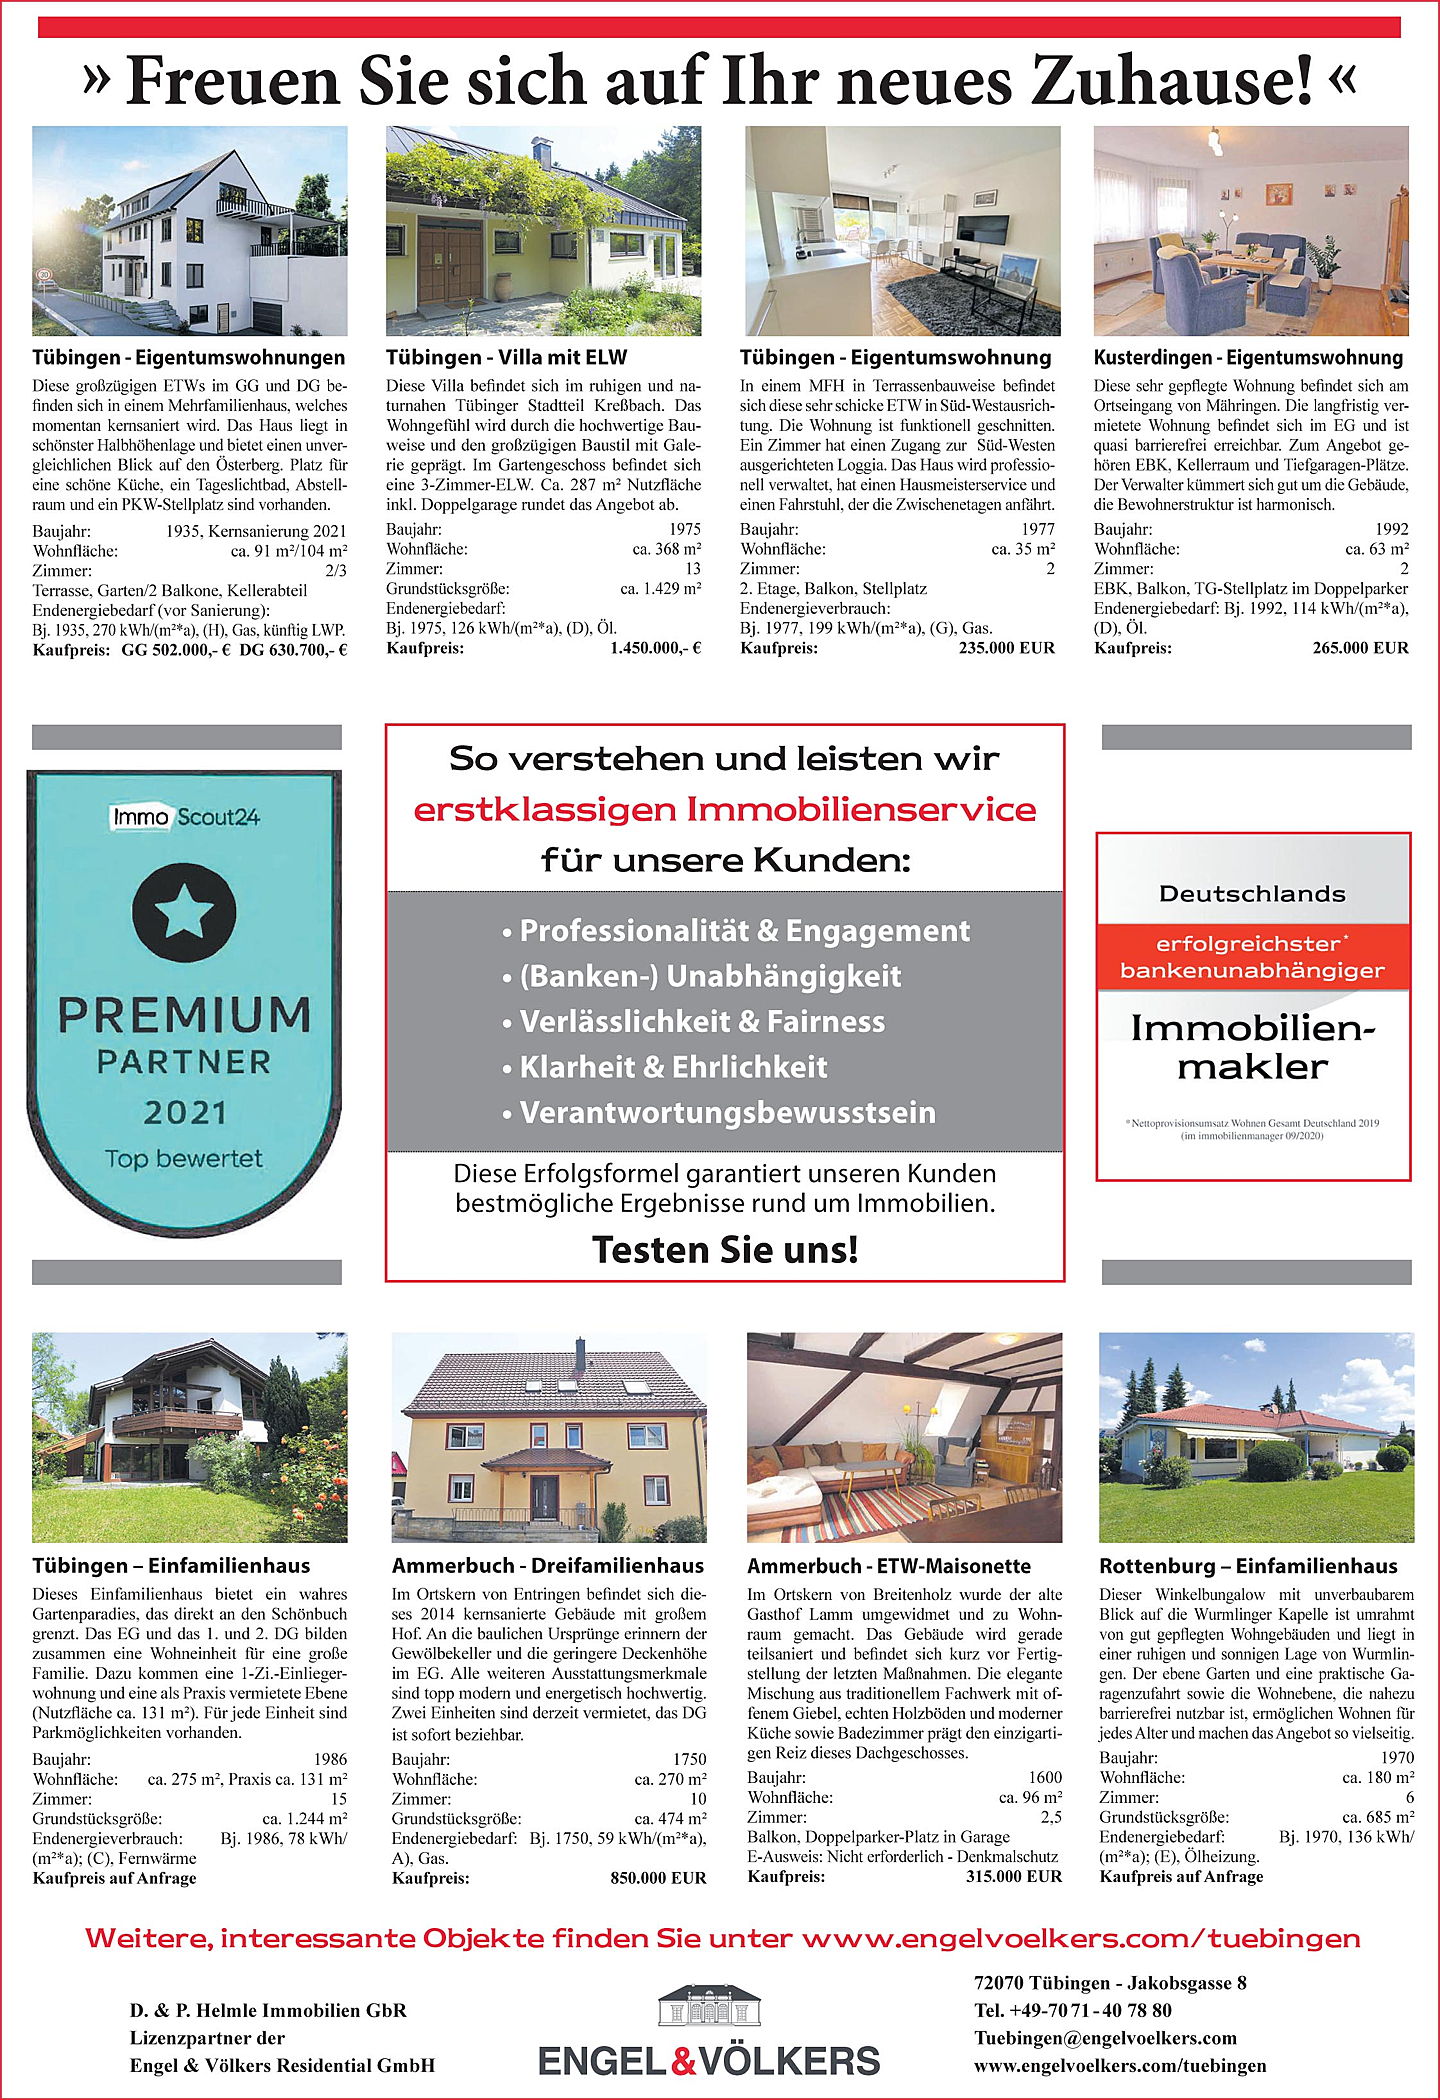  Tübingen
- Immobilienratgeber 2021.jpg